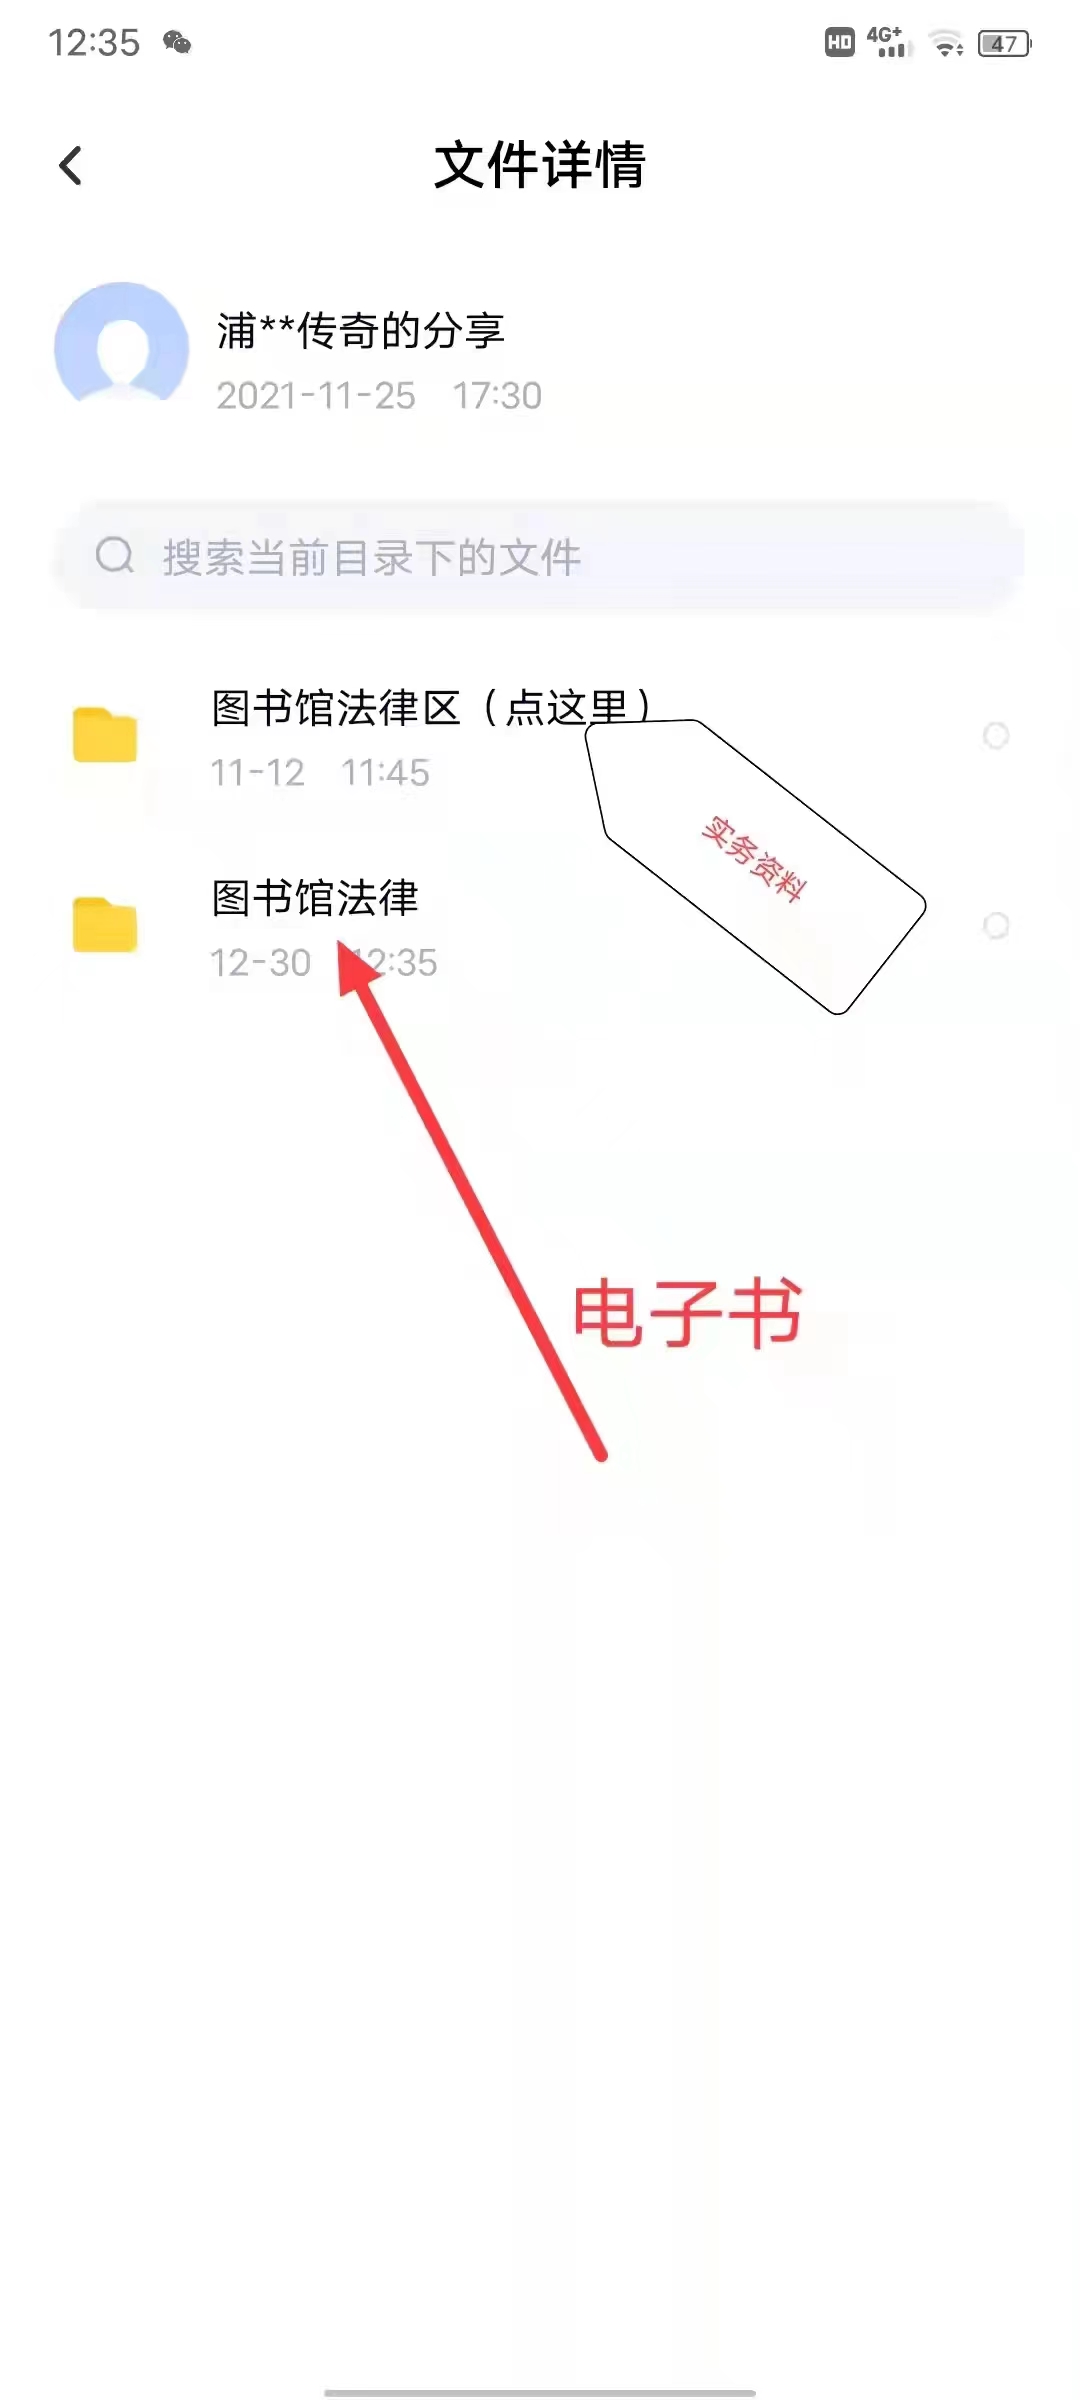 【法律】【PDF】439 房屋买卖合同纠纷案件裁判规则 202010 杨奕